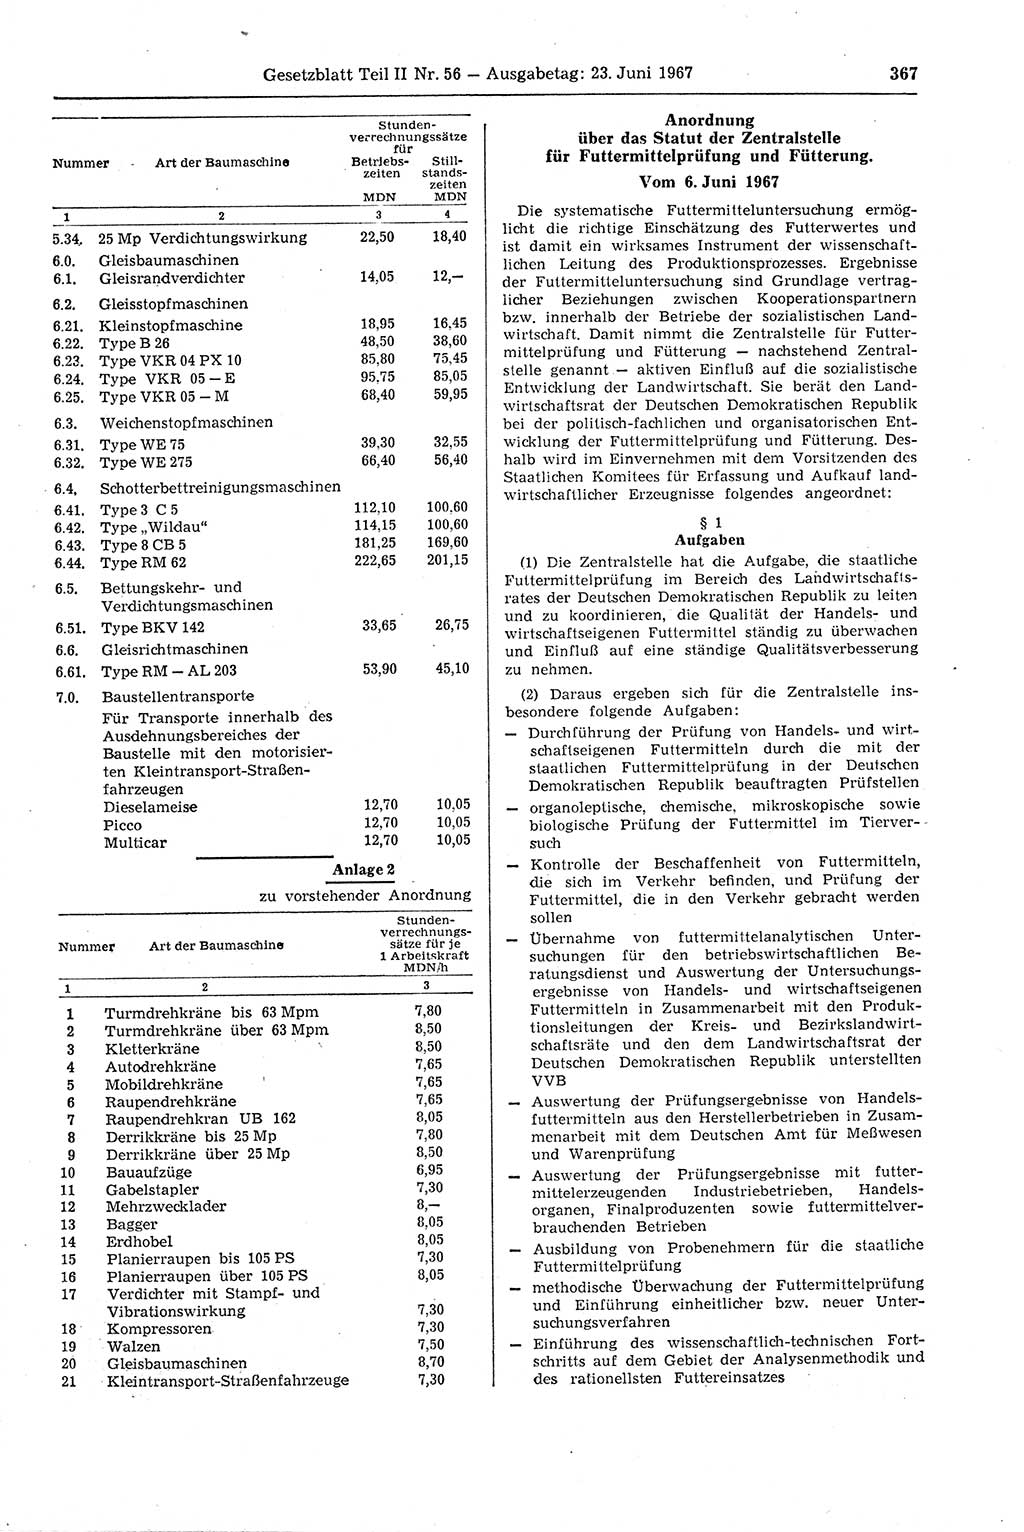 Gesetzblatt (GBl.) der Deutschen Demokratischen Republik (DDR) Teil ⅠⅠ 1967, Seite 367 (GBl. DDR ⅠⅠ 1967, S. 367)